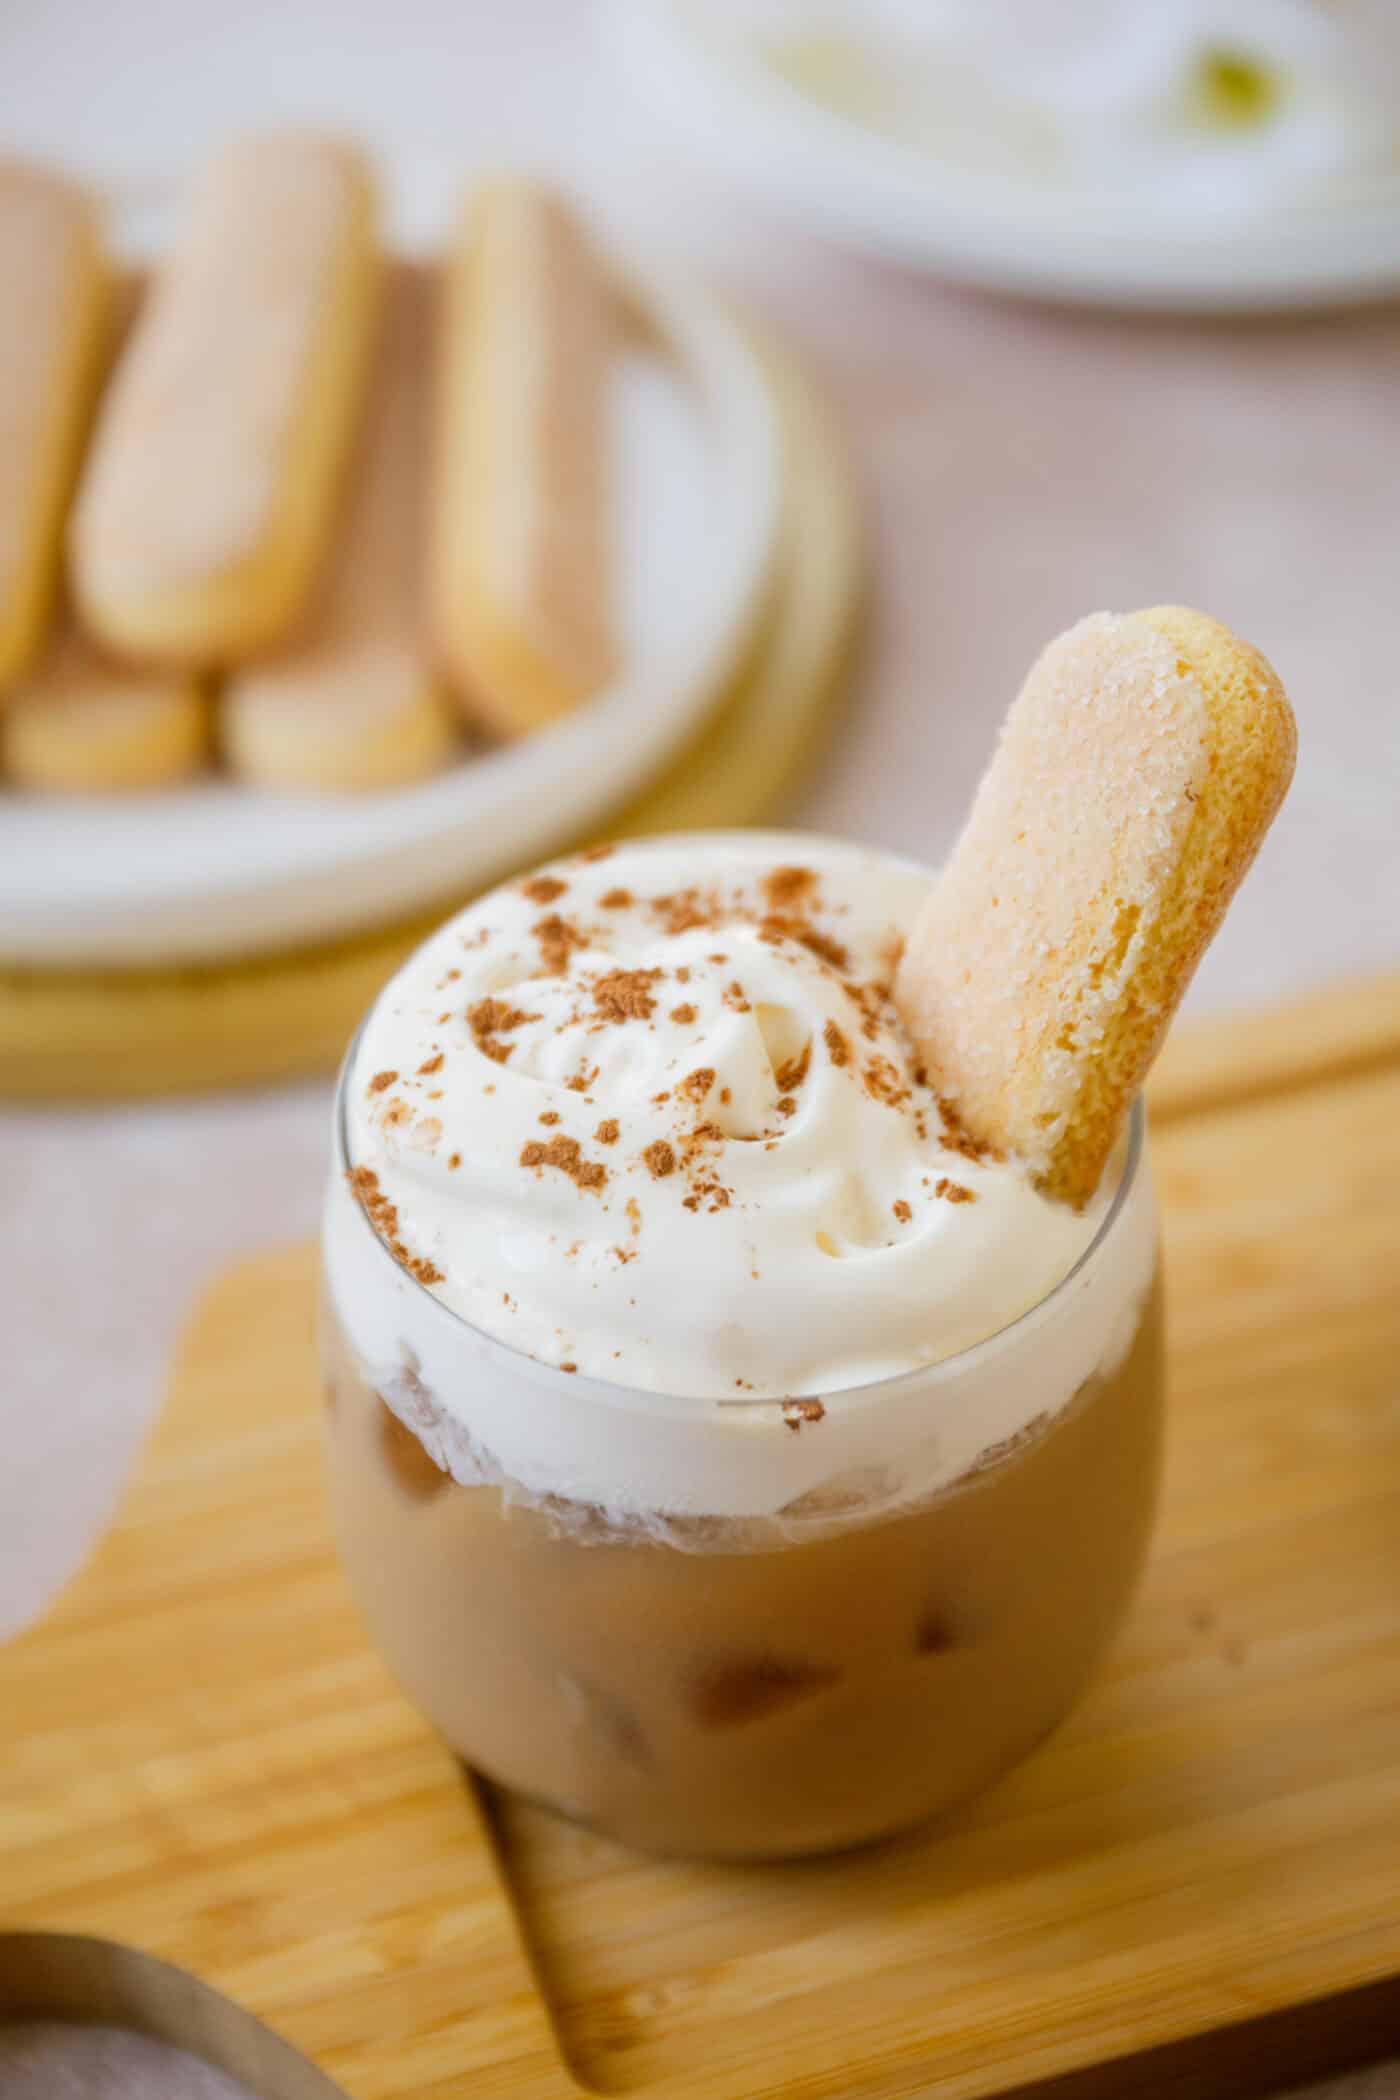 tiramisu iced latte with ladyfingers cookies